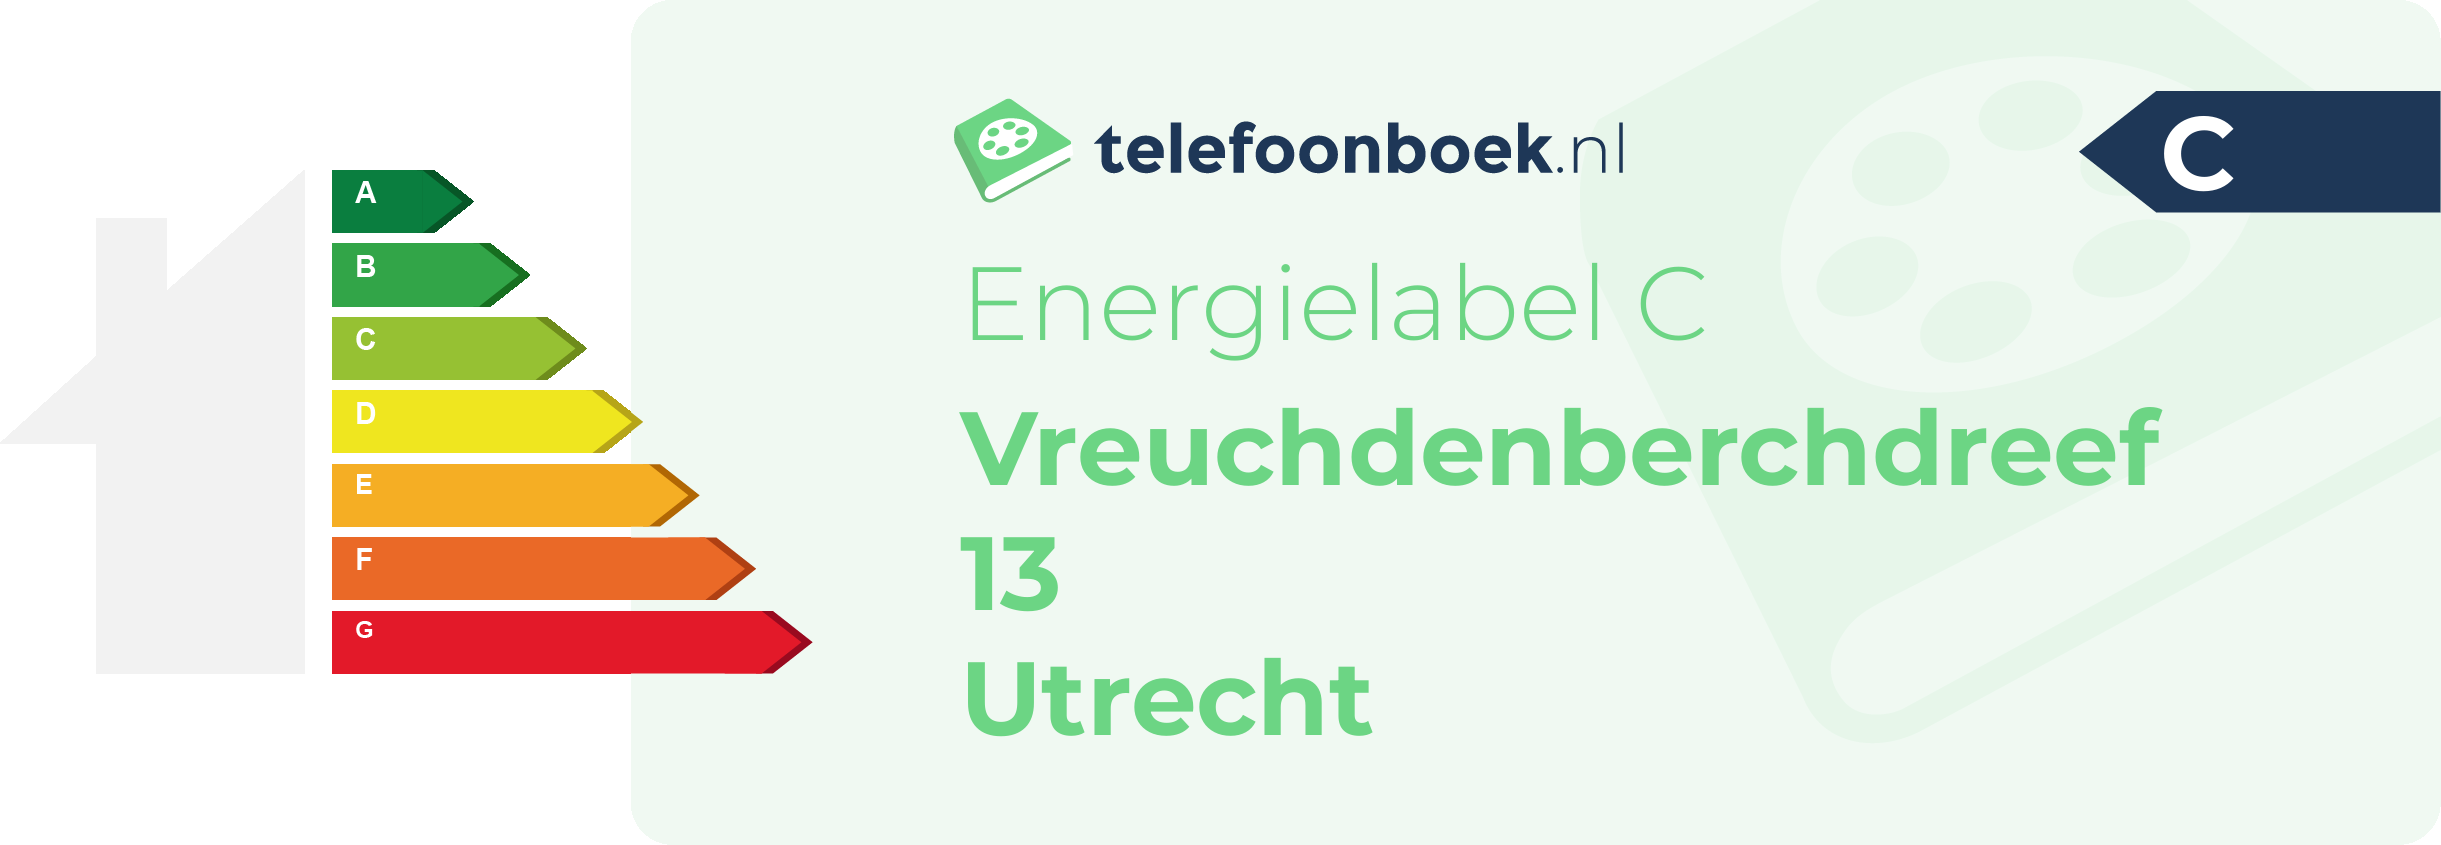 Energielabel Vreuchdenberchdreef 13 Utrecht